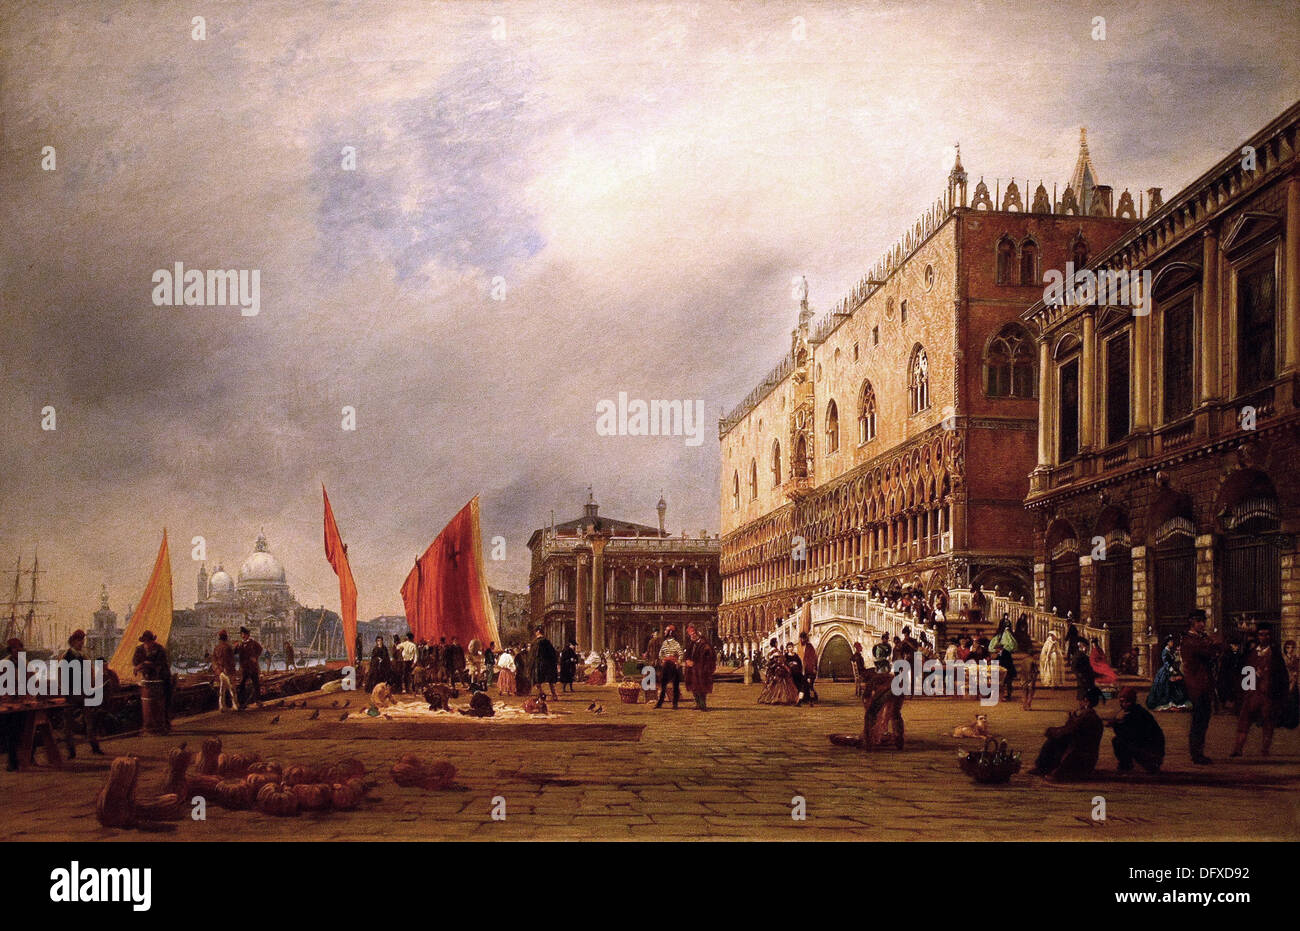 Rudolf von ALT - Vue de Venise avec le palais des Doges et le pont de la Pagalia - Musée des beaux-arts - Budapest, Hongrie. Banque D'Images